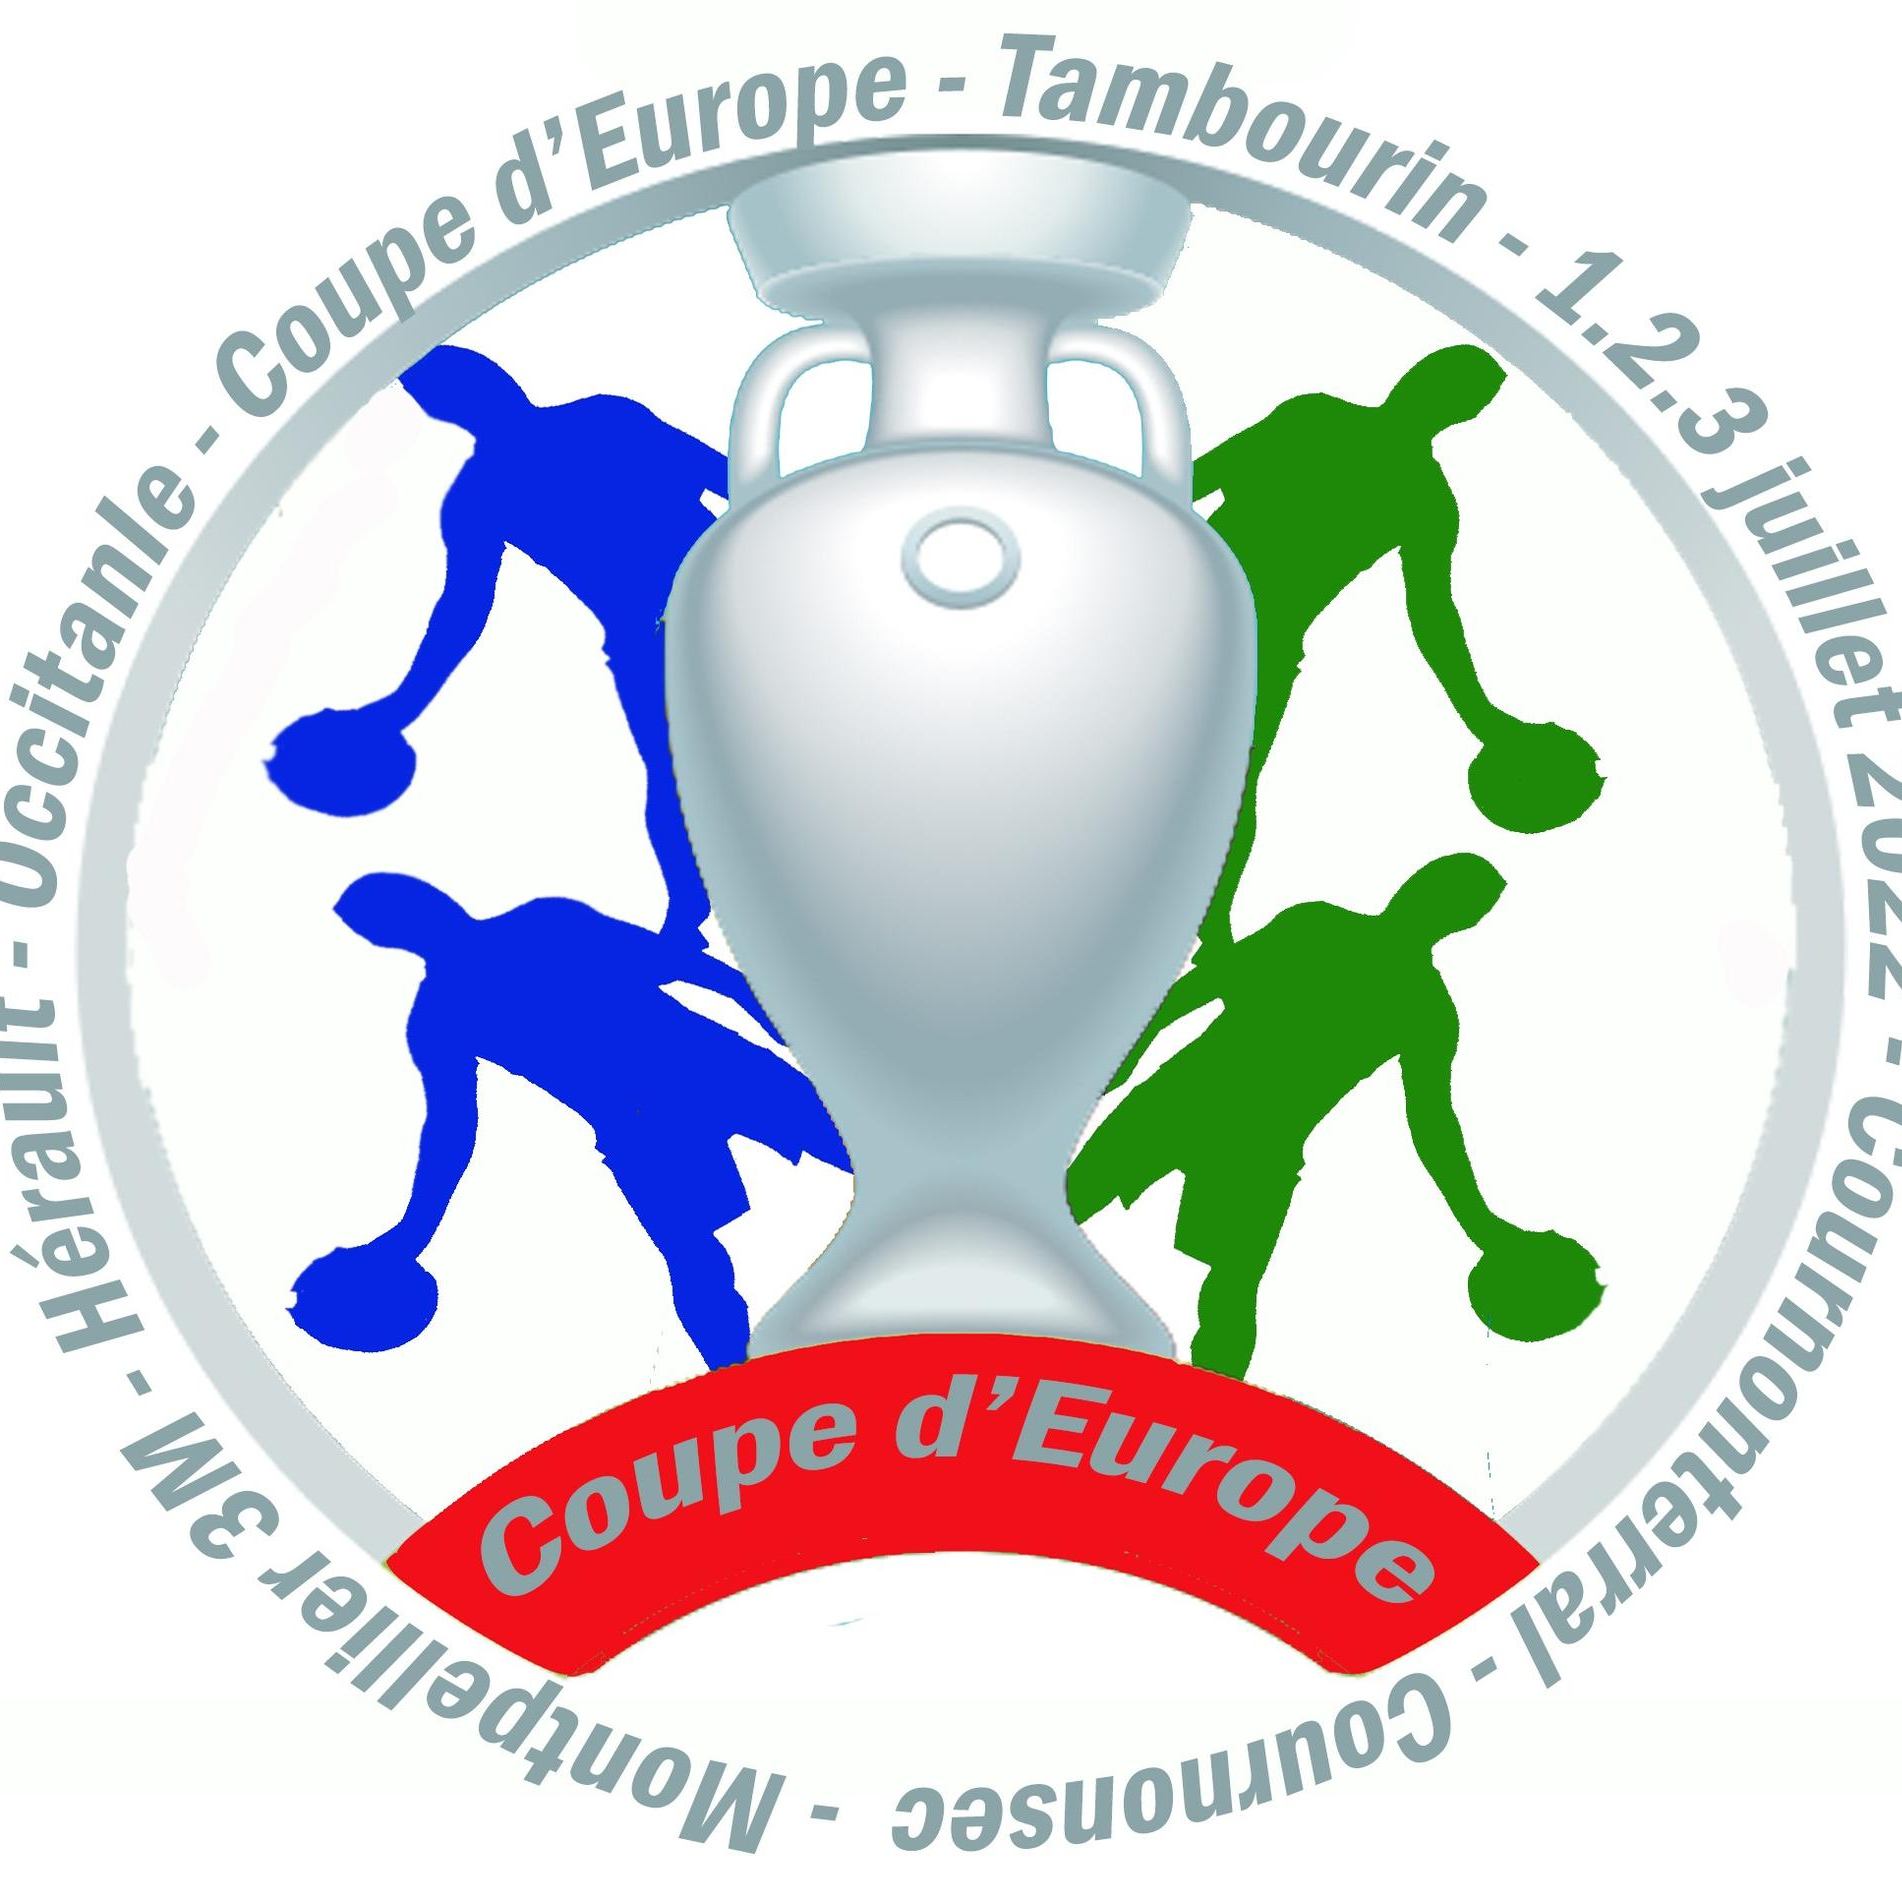 Coppa Europa 2022